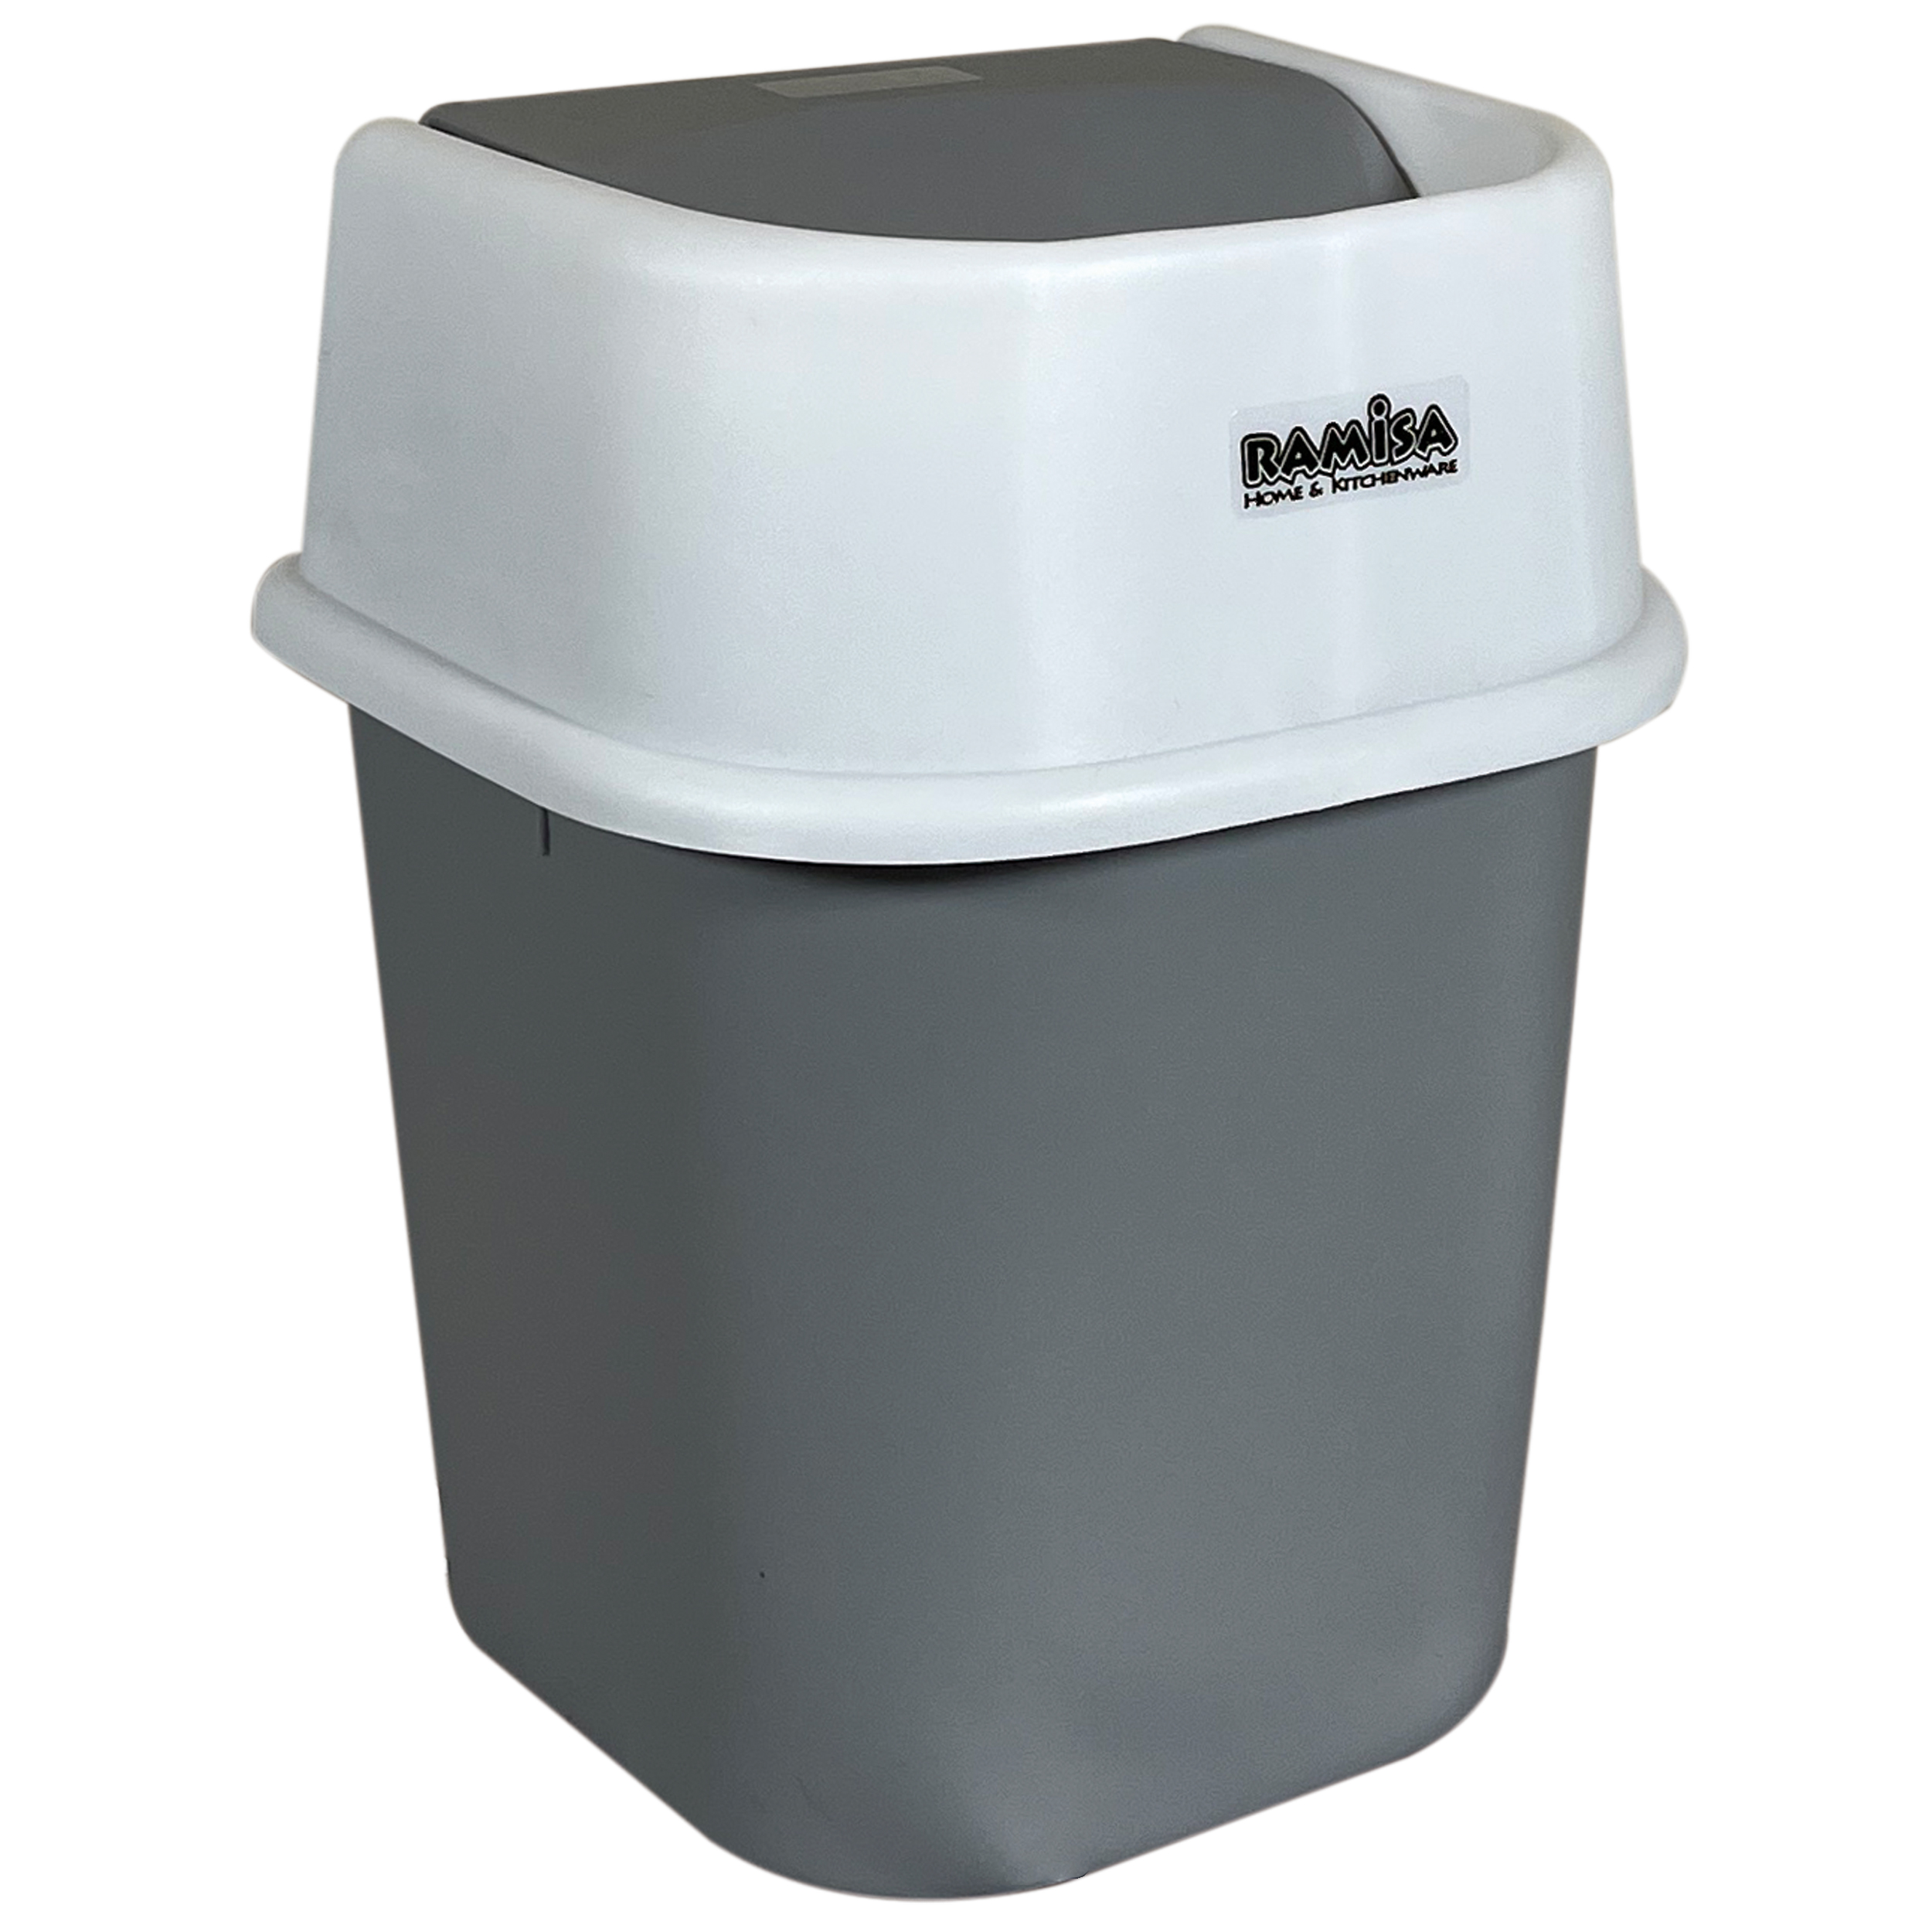 سطل زباله رامیسا مدل استاندارد